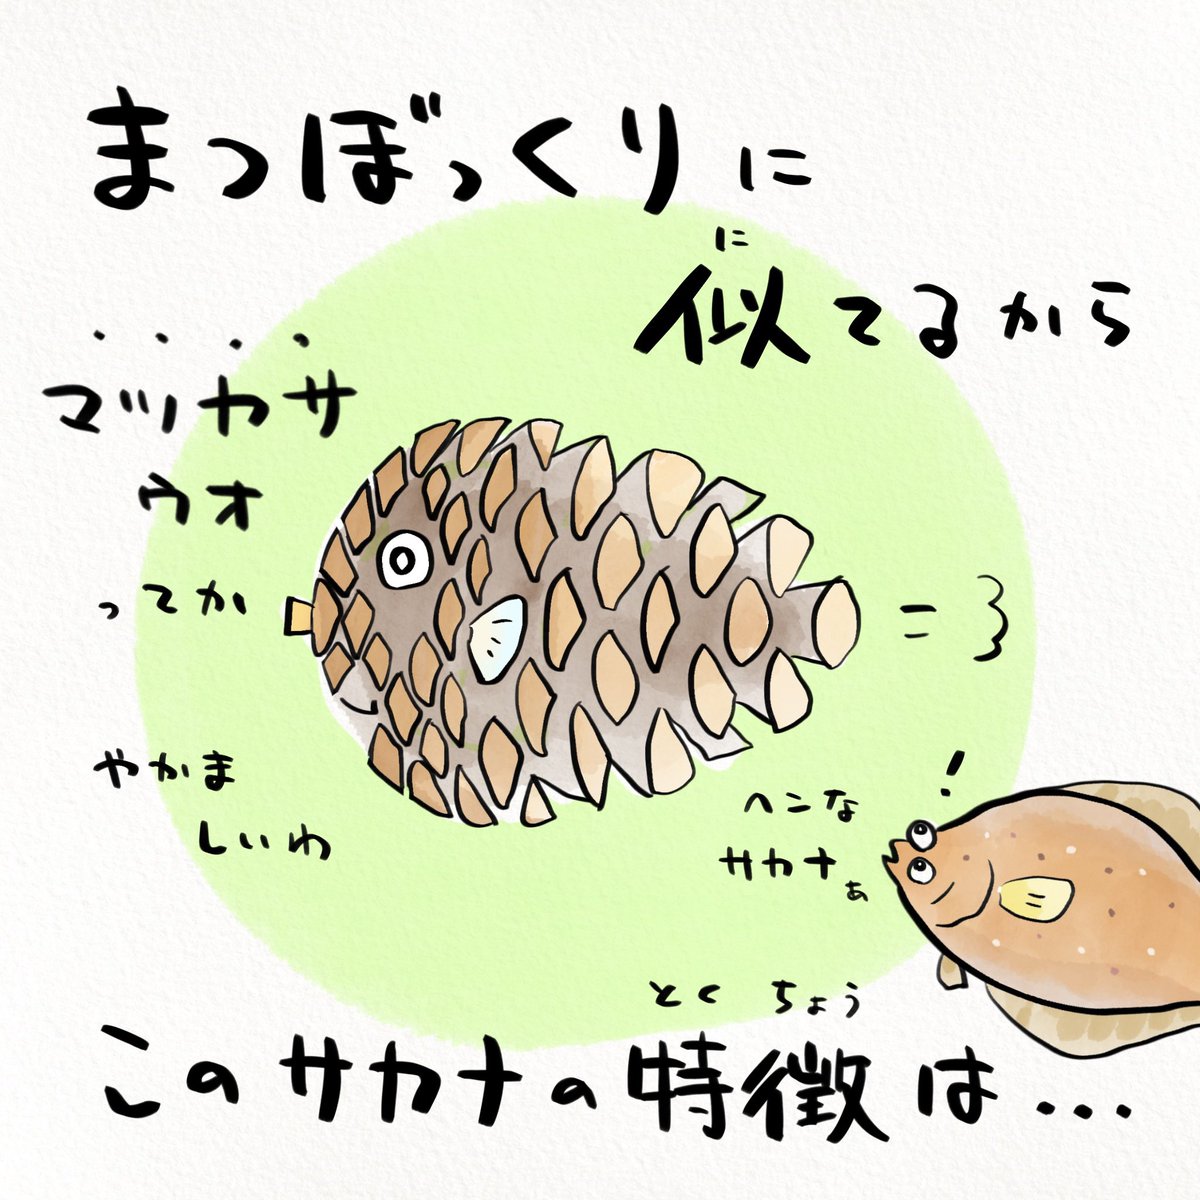 たまたま停電した日本の水族館で発見された新事実 